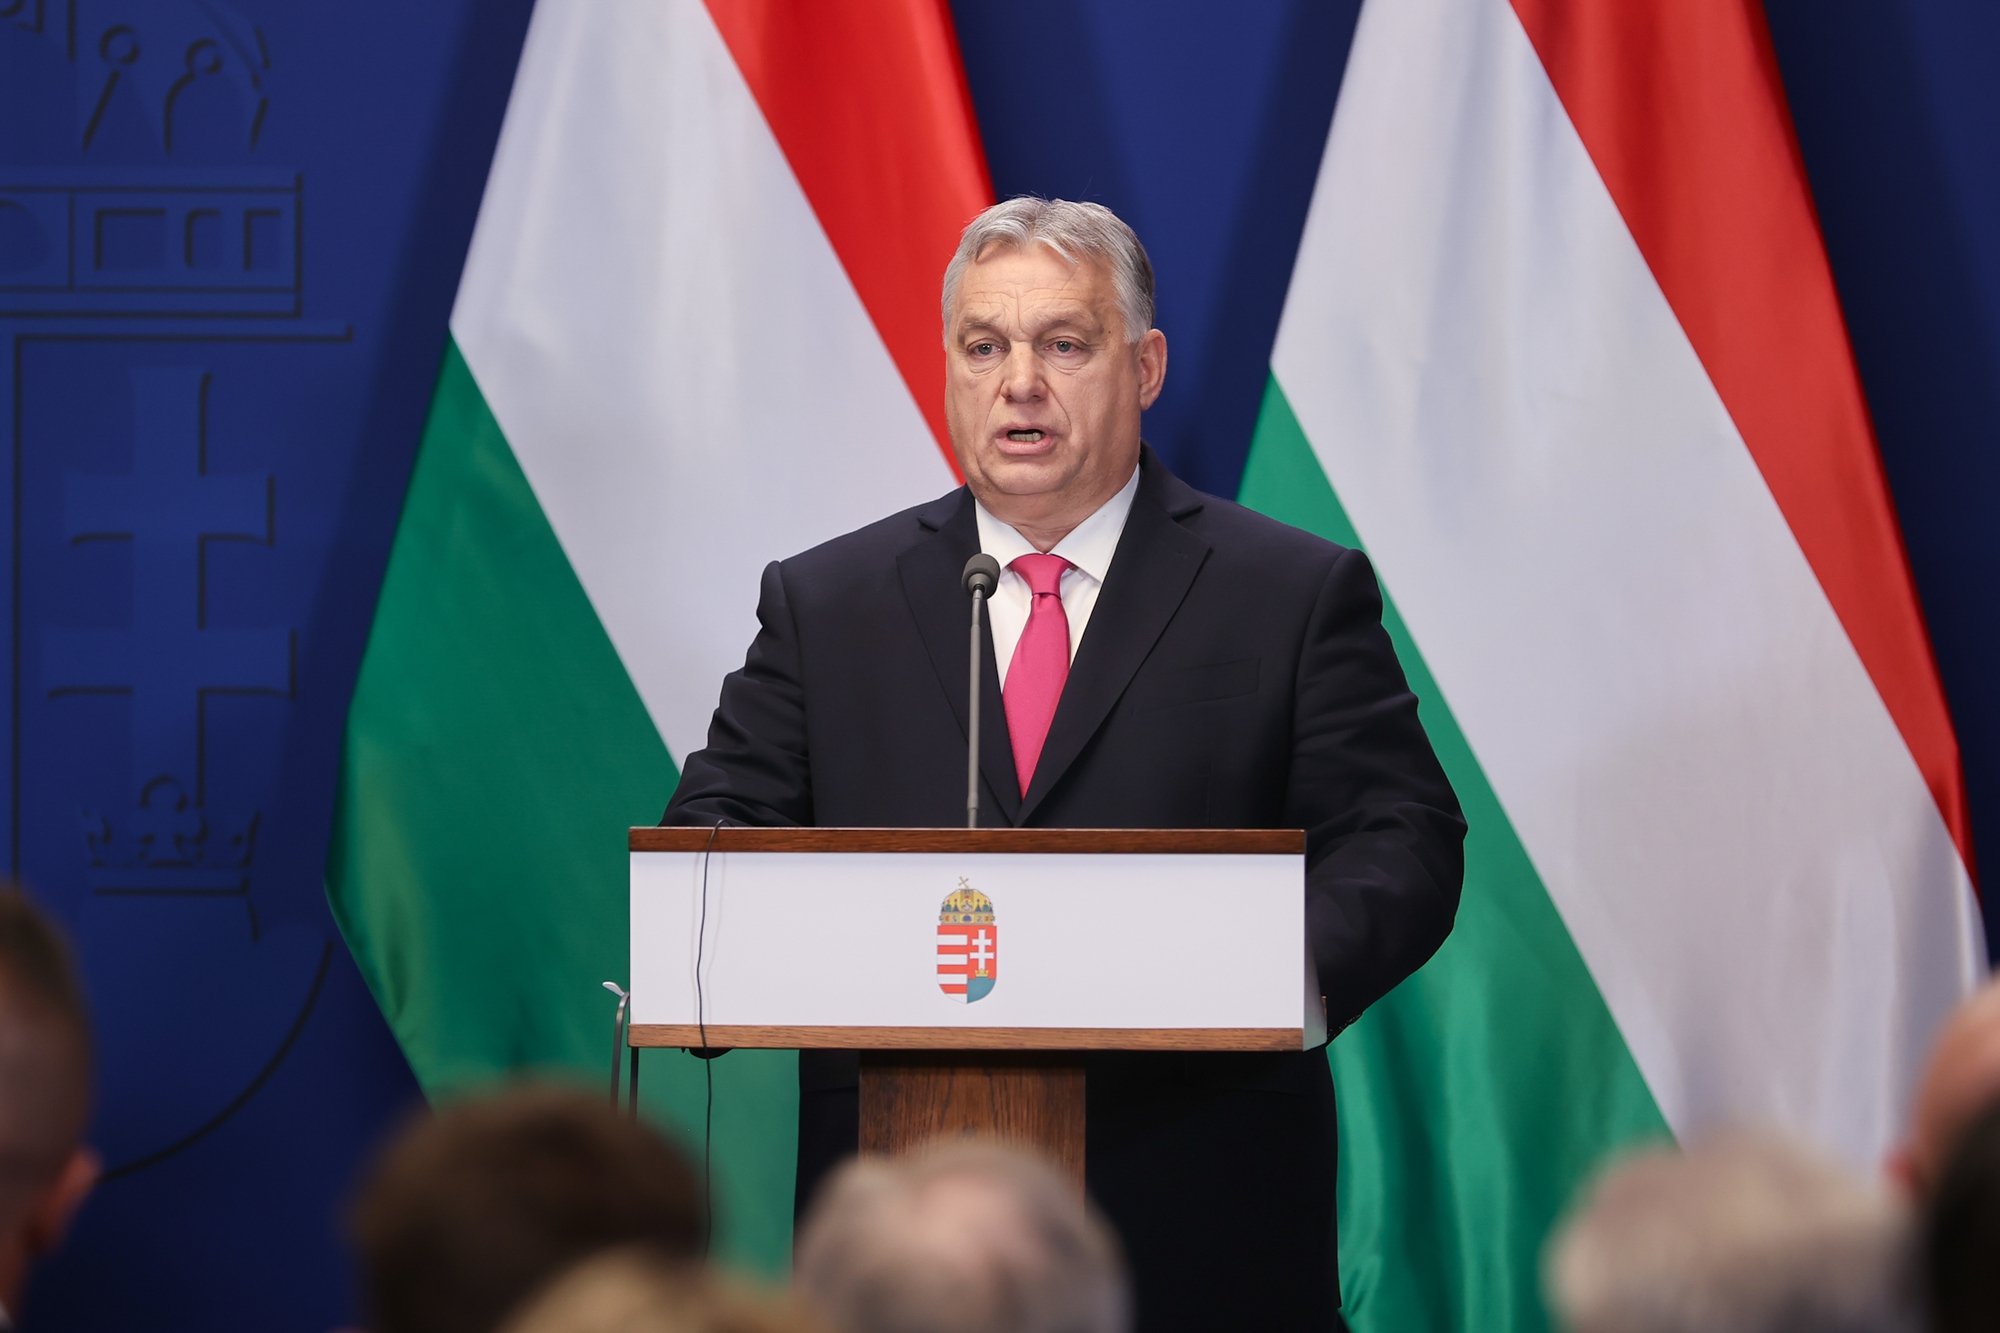 Thủ tướng Hungary Viktor Orbán mong muốn và tin tưởng Việt Nam sẽ tham gia vào nhóm các quốc gia thành công, cũng như hai bên sẽ thành công trong việc thúc đẩy hợp tác song phương - Ảnh: VGP/Nhật Bắc